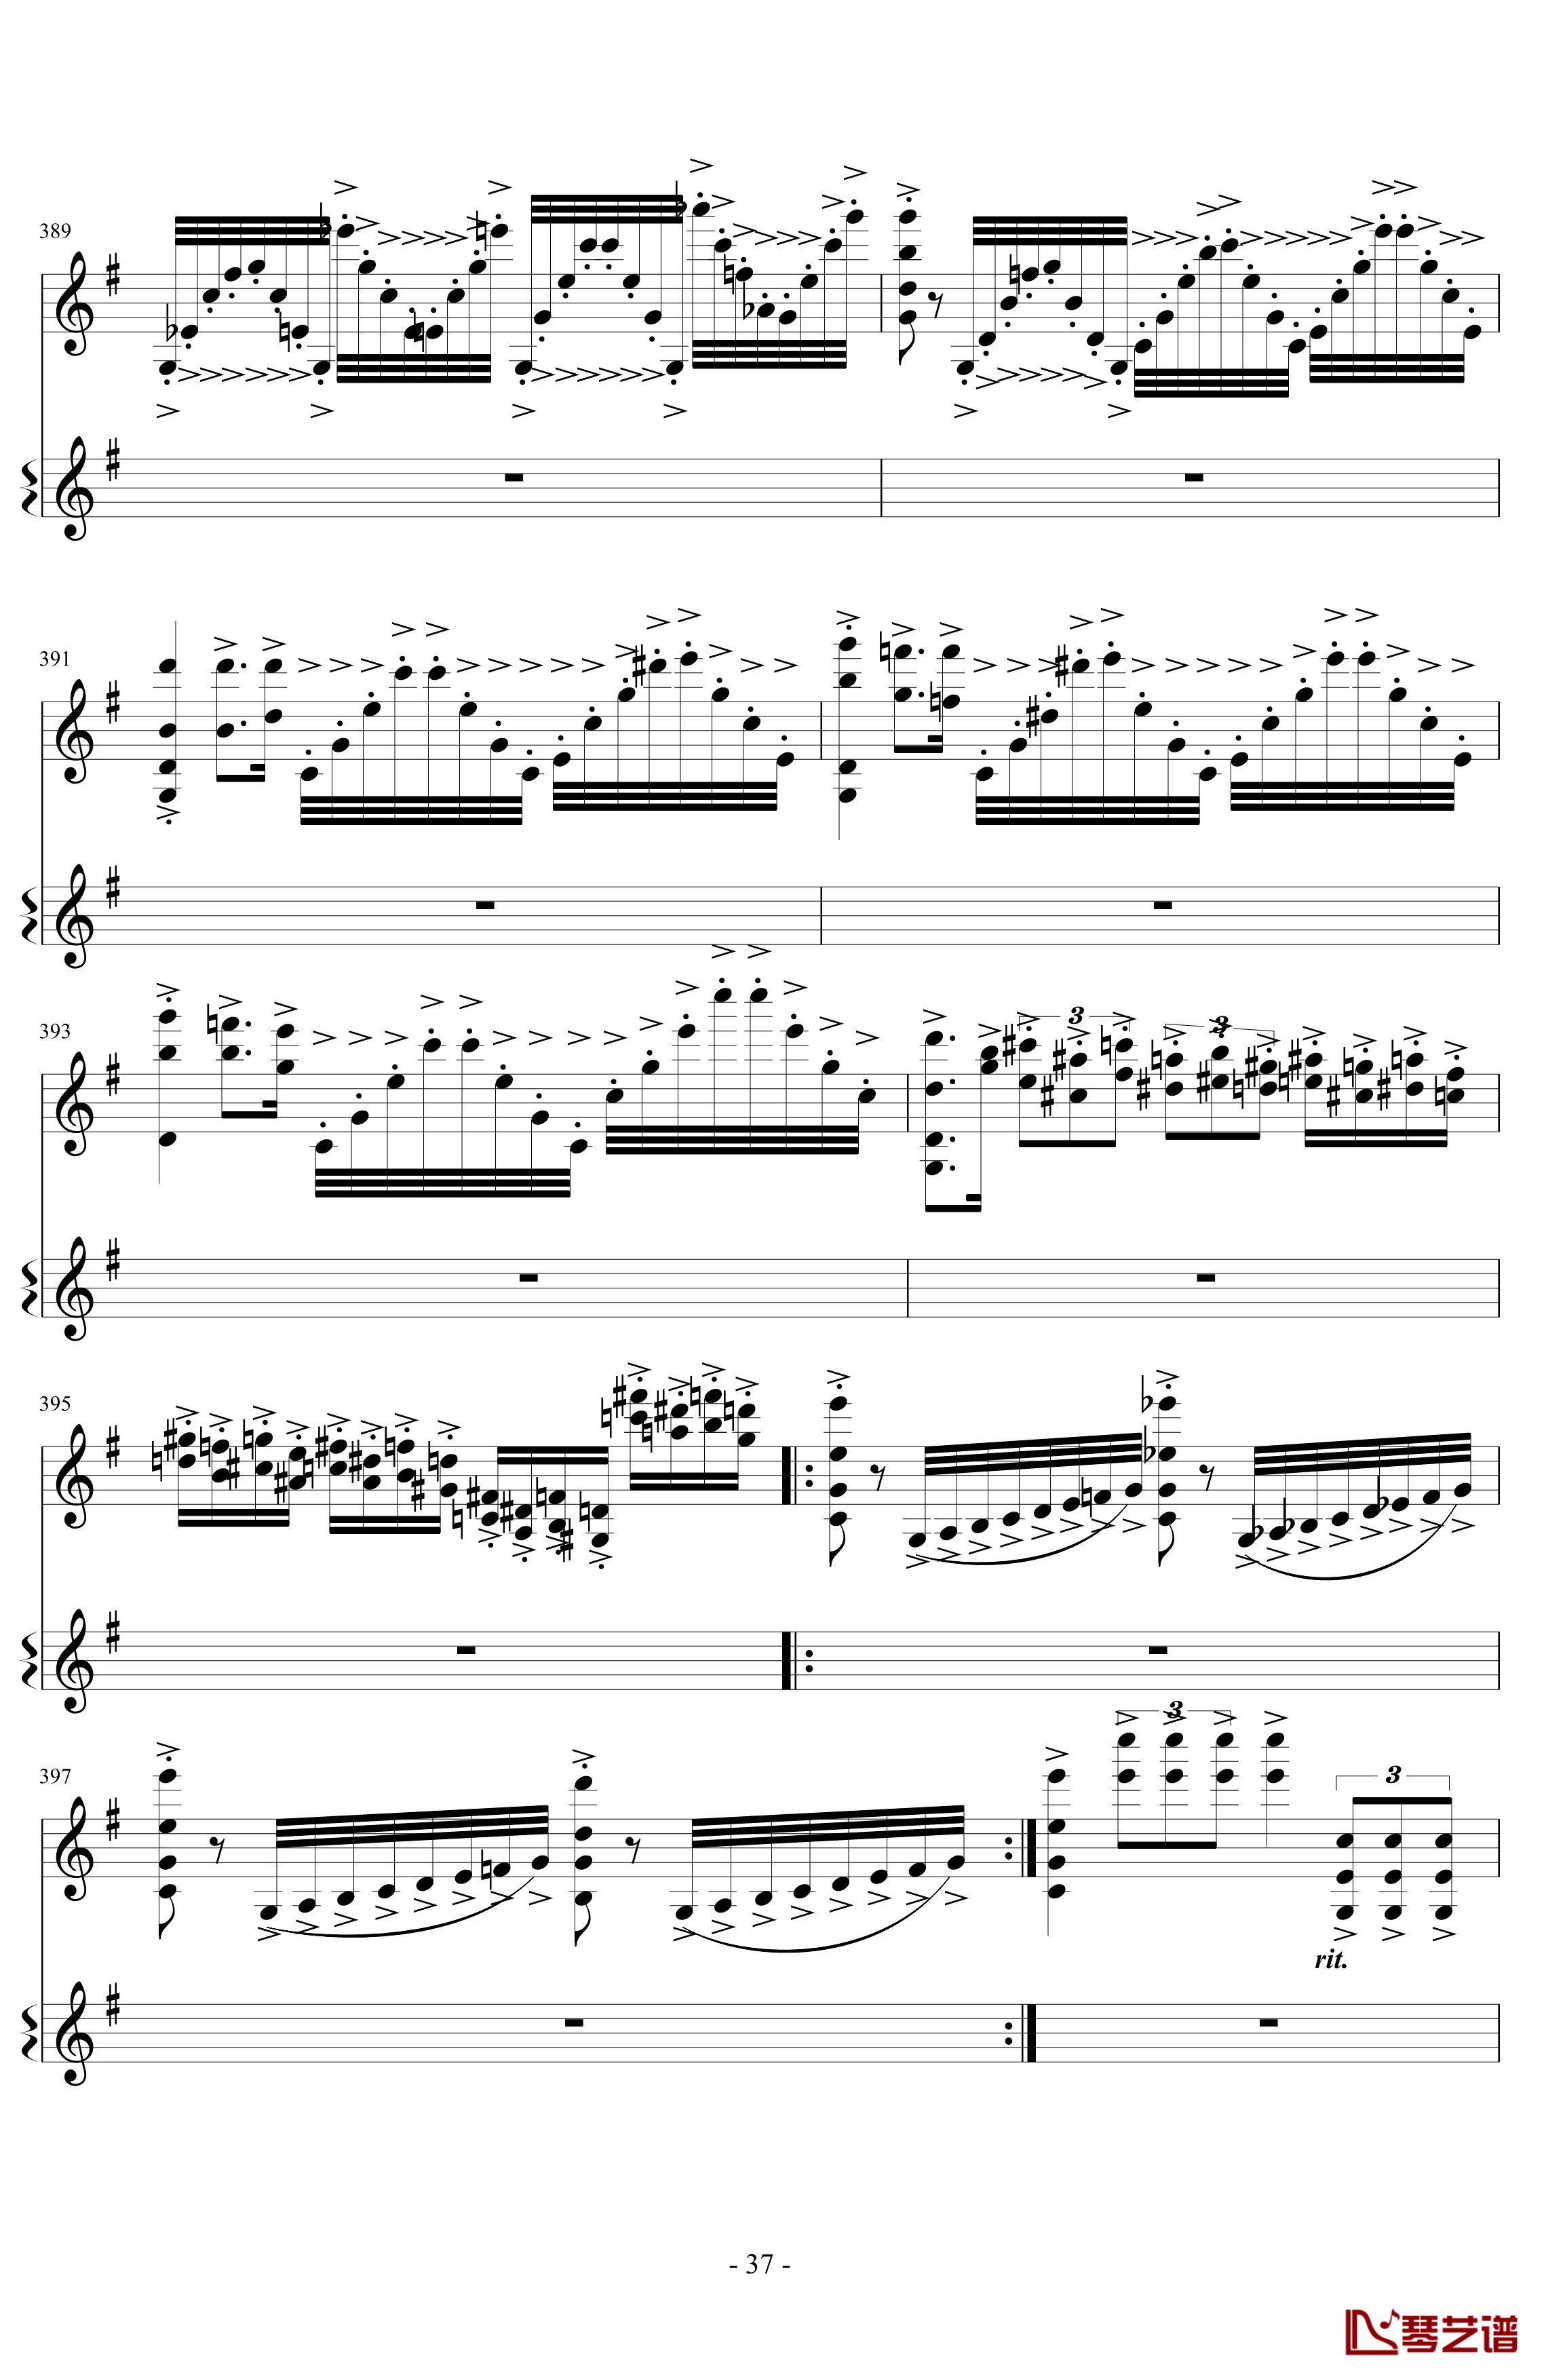 意大利国歌变奏曲钢琴谱-DXF37